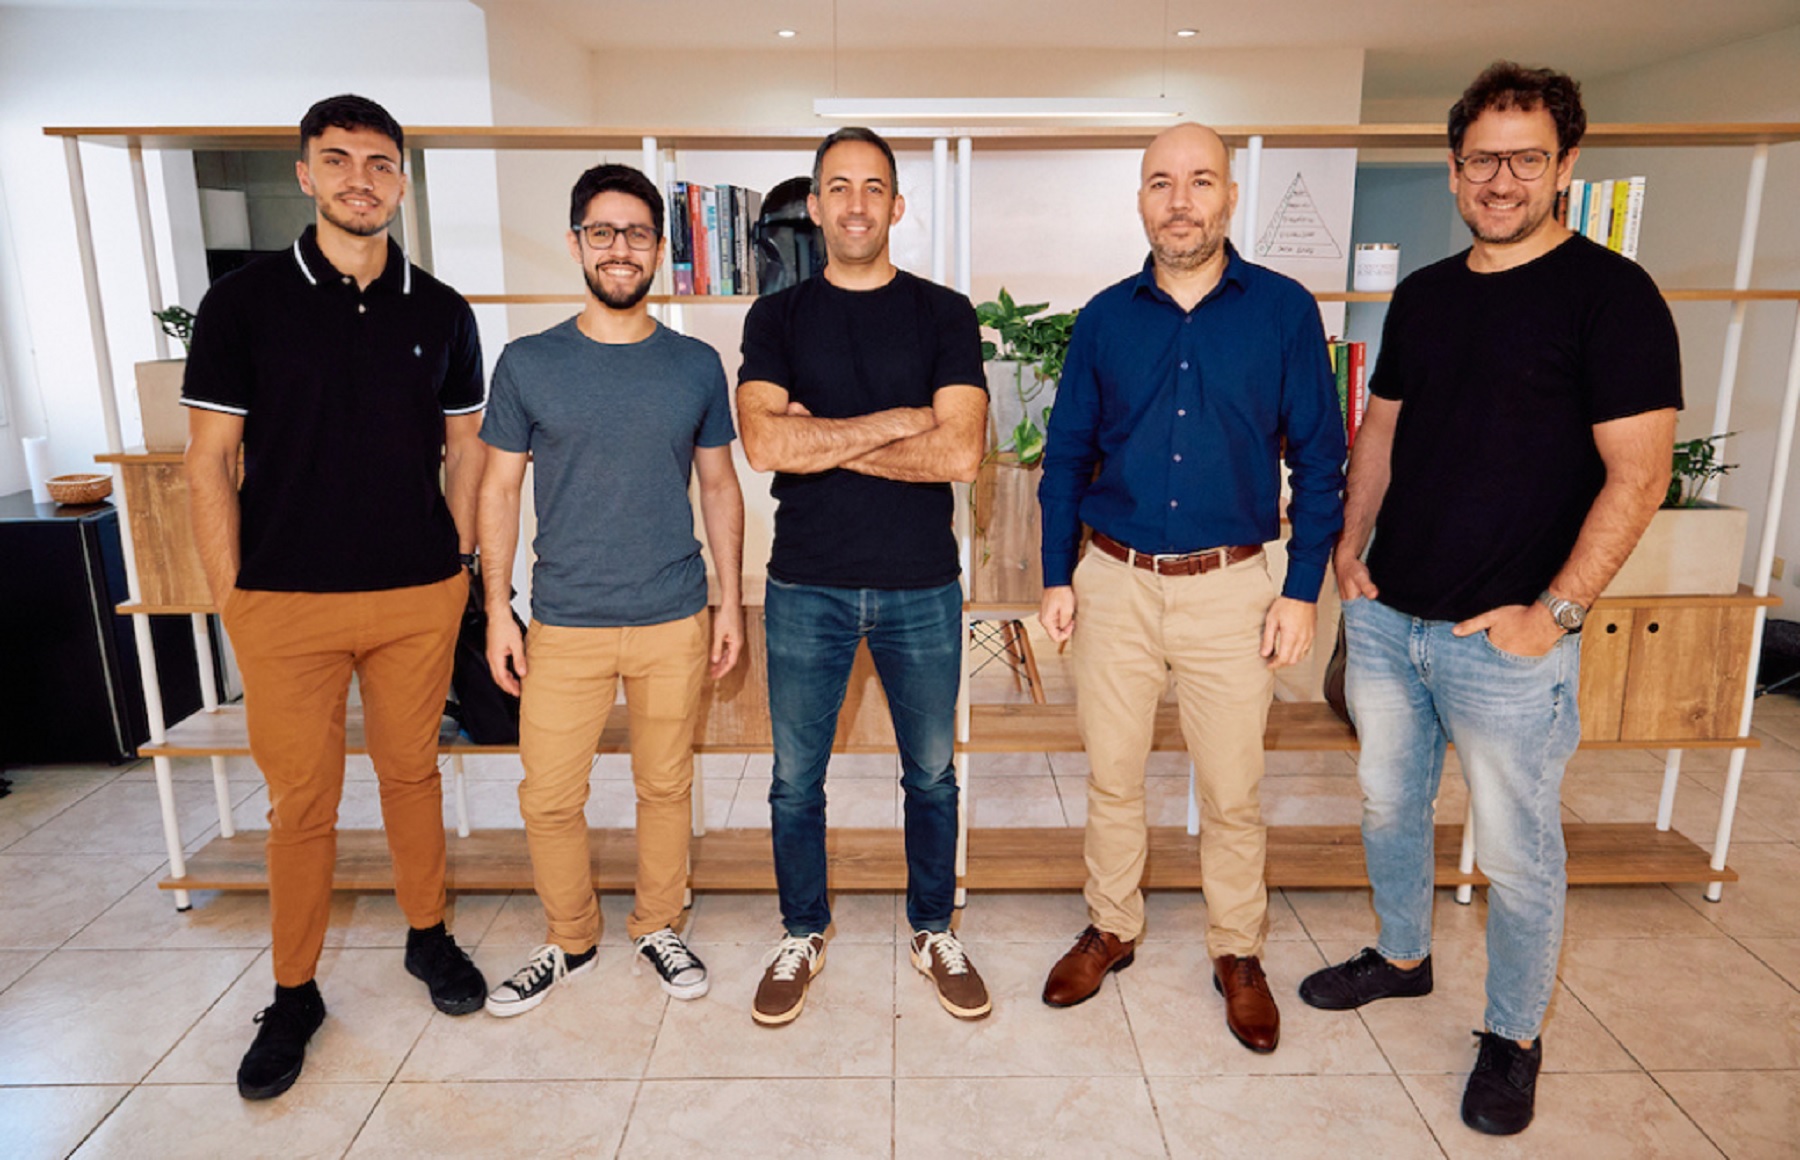 De izquierda a derecha, Bautista Guerra, Alejandro Giorgio, Bruno Ruyú, Lucas Uzal, Gabriel Puertas. Todos parte del equipo de desarrollo de IA de Teramot. Crédito: Teramot.